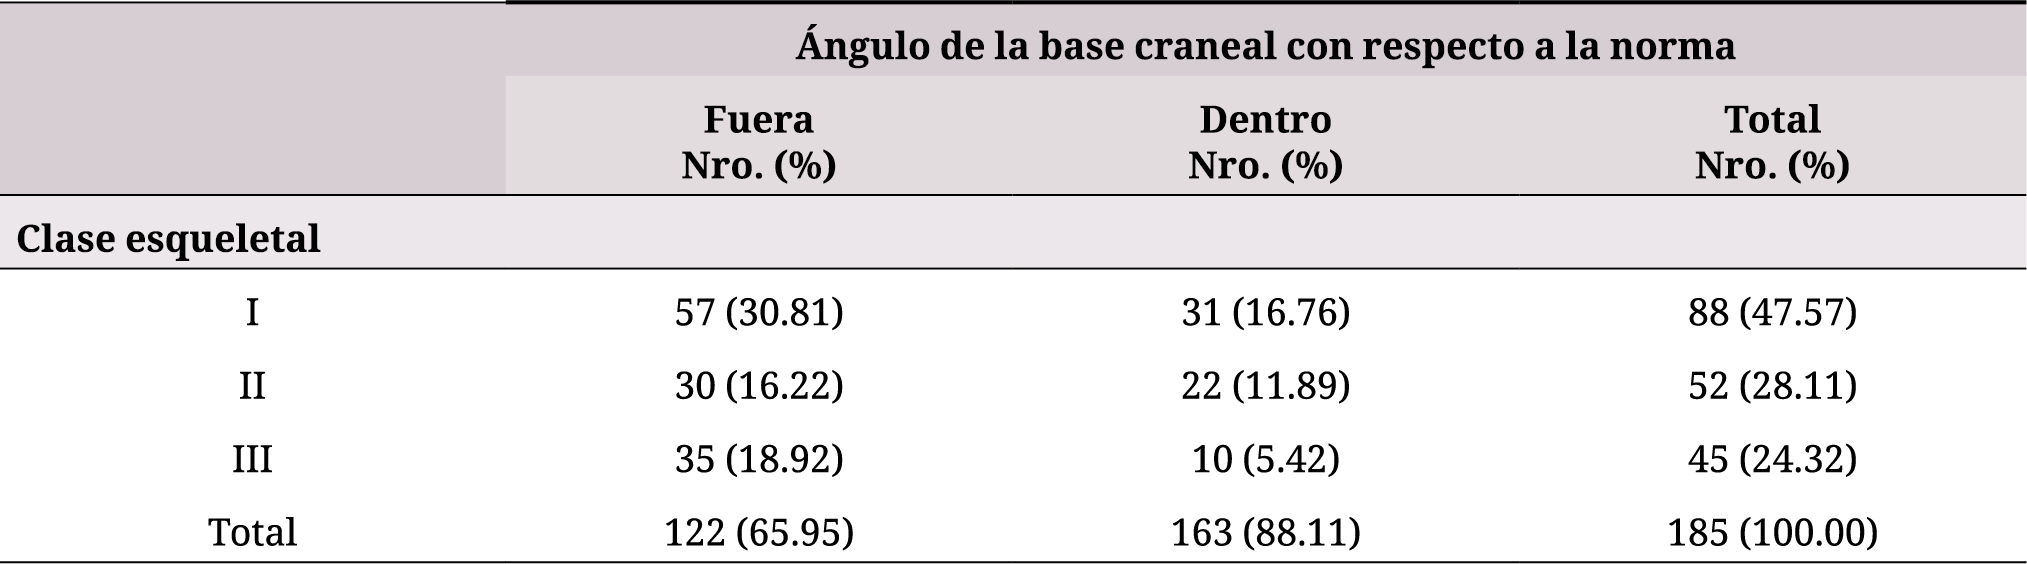 Distribución del ángulo de la base craneal por clase esqueletal con respecto a valores de la norma en pacientes adultos que acudieron a la Clínica Odontológica del ILES. Años 2010 a 2018.